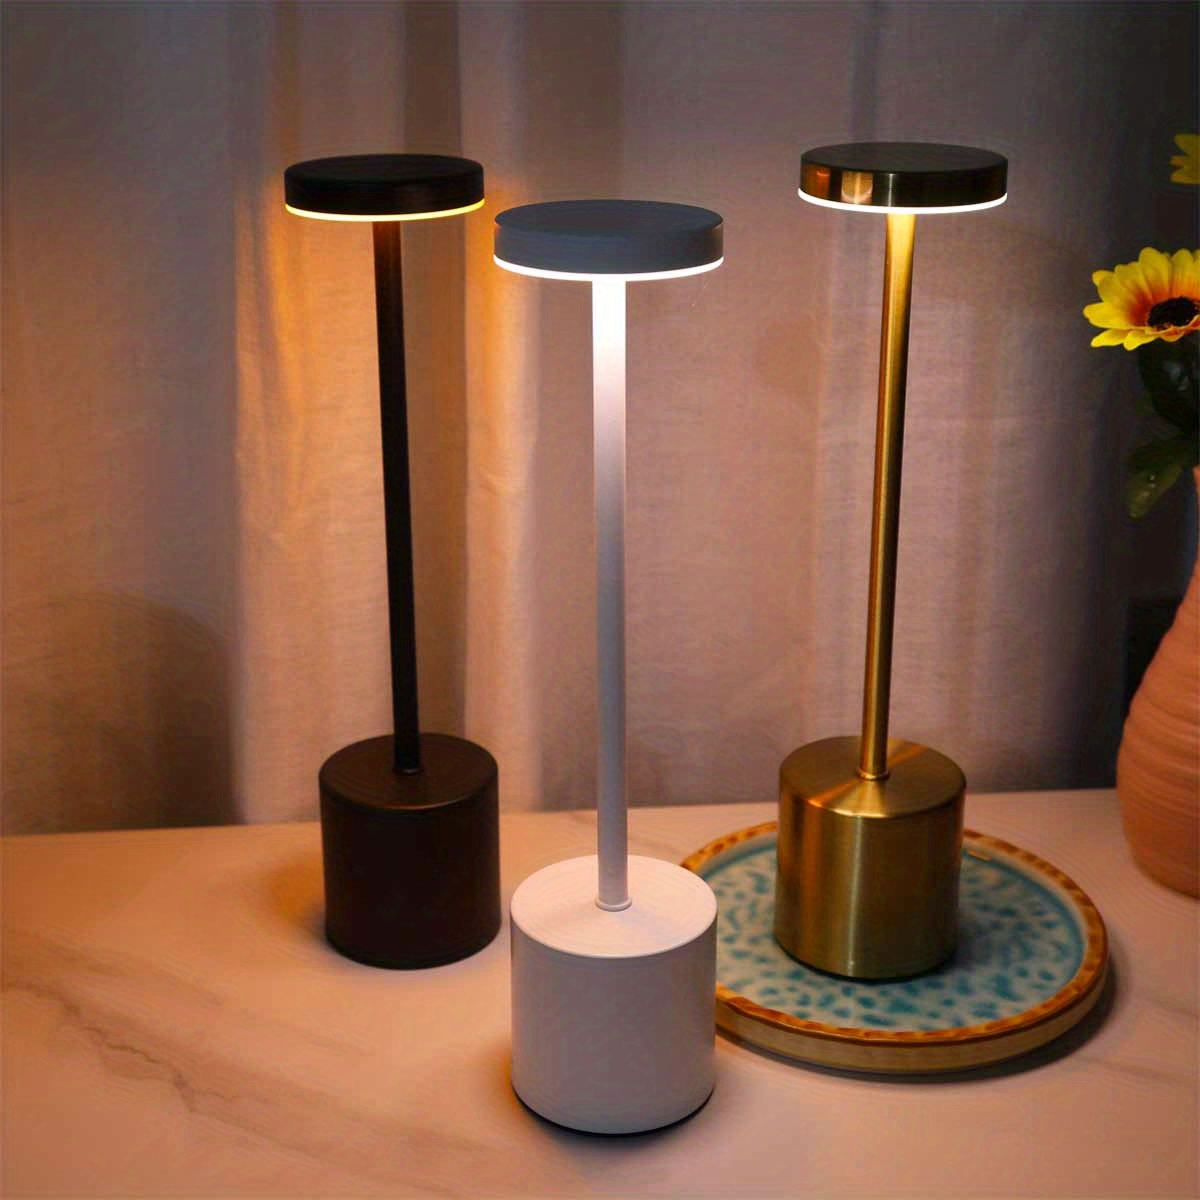  Lámparas de mesa con pilas, lámpara de mesa inalámbrica floral  con pilas, lámparas inalámbricas para mesas, lámpara de mesa de cristal,  lámpara de mesa inalámbrica con temporizador, luz nocturna LED, 